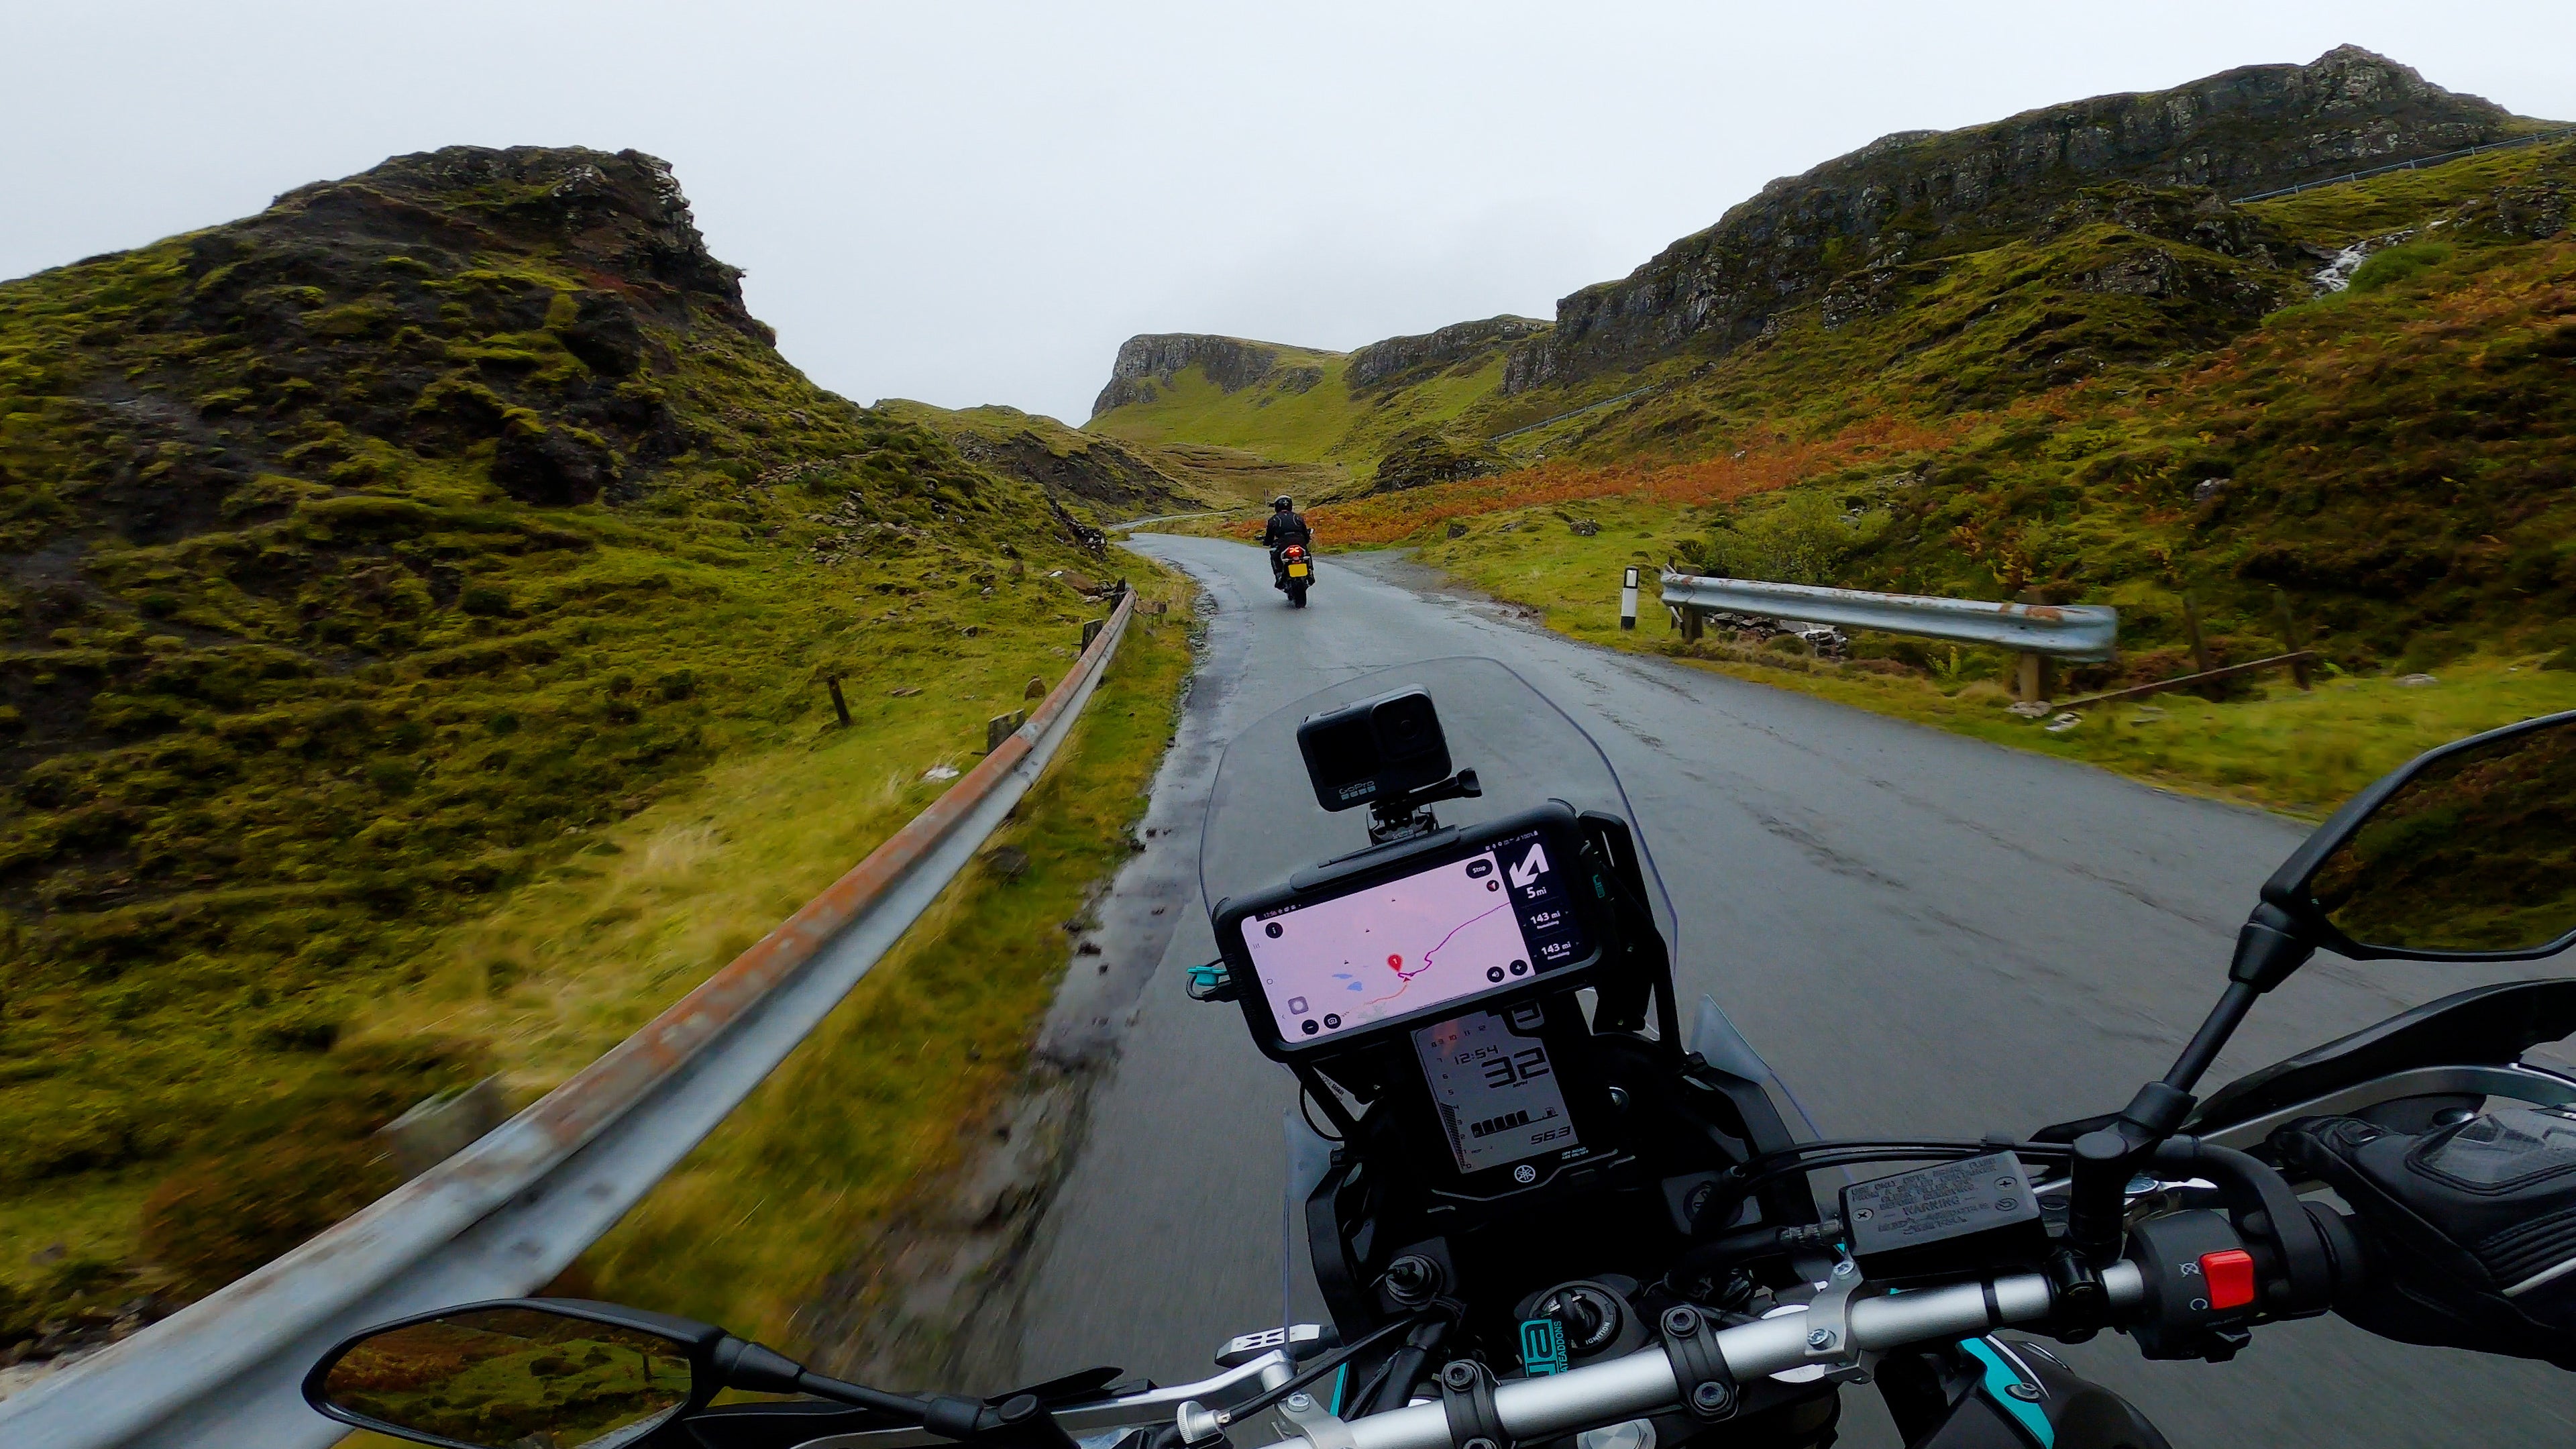 Riding Through Skye Motorcycle